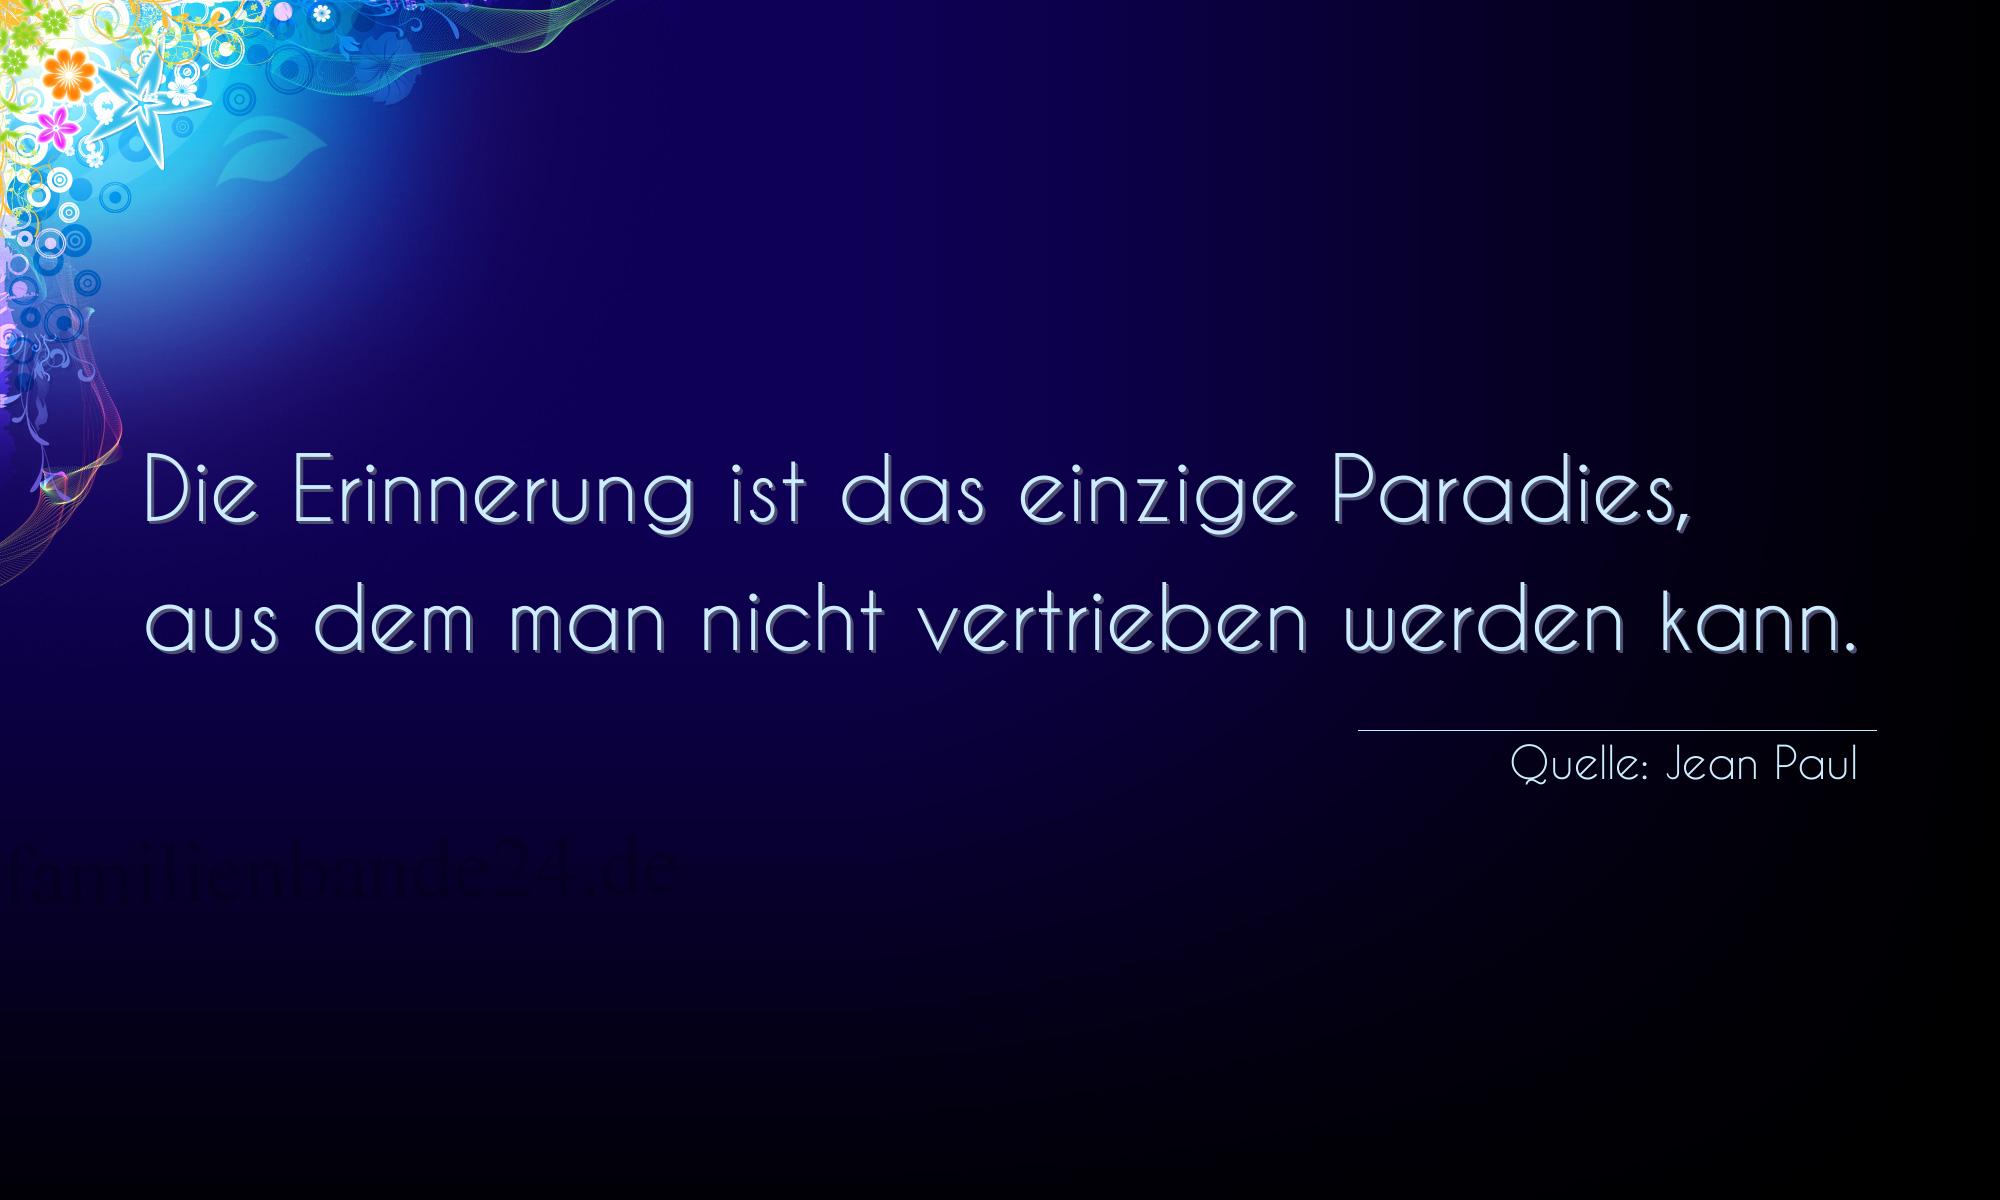 Aphorismus Nummer 1313 (von Jean Paul): "Die Erinnerung ist das einzige Paradies, aus dem man nich [...]